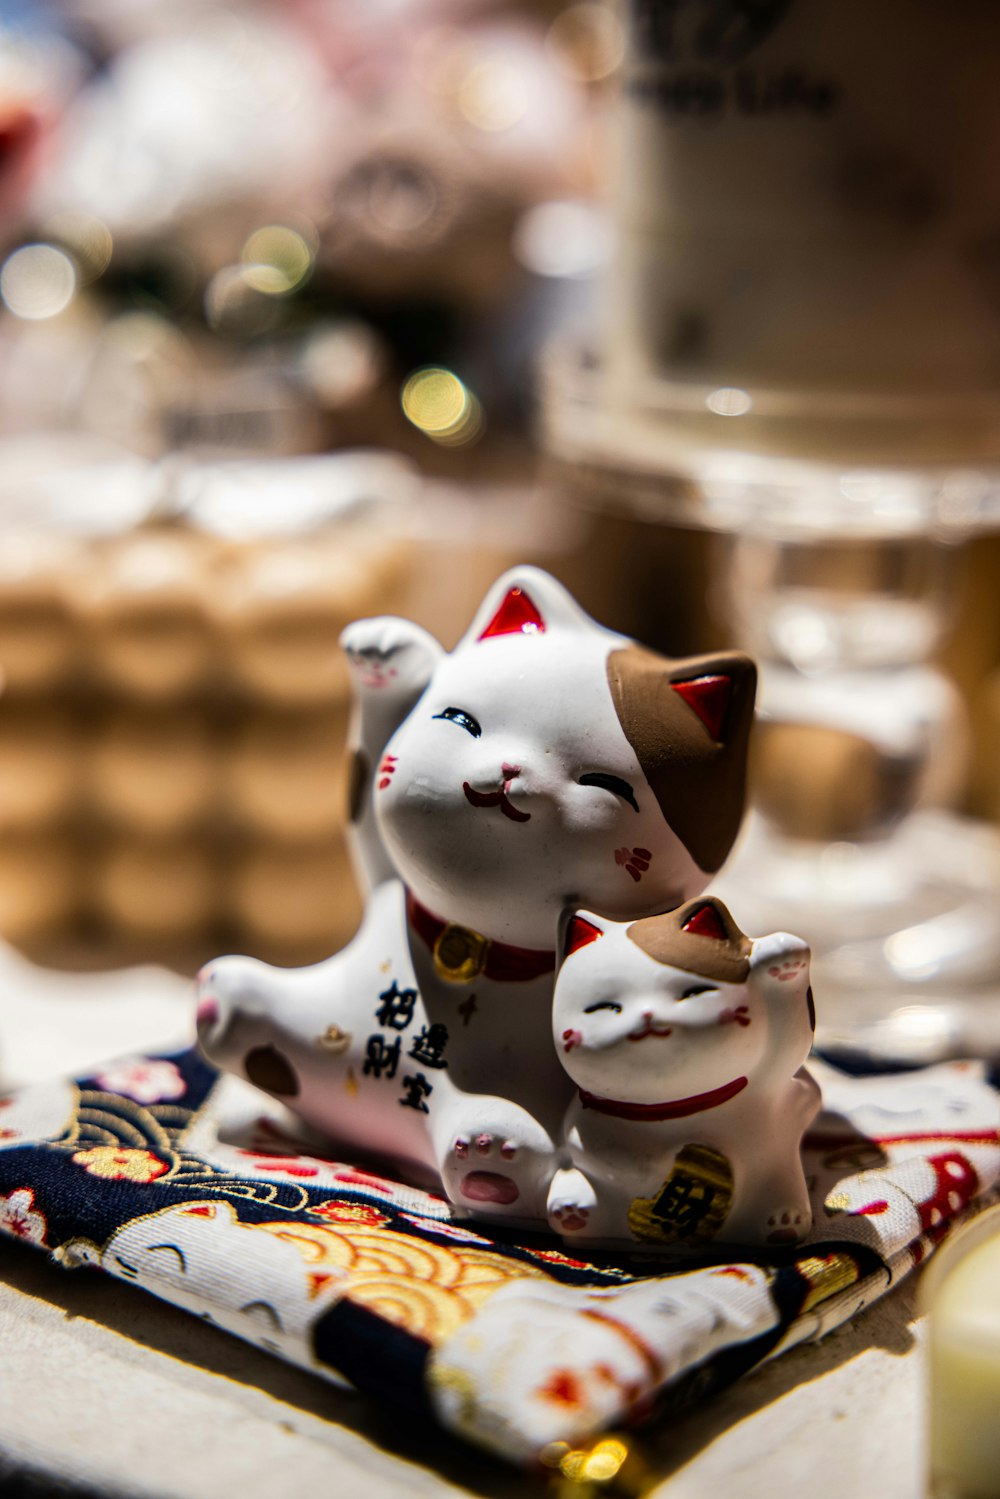 white and black ceramic cat figurines